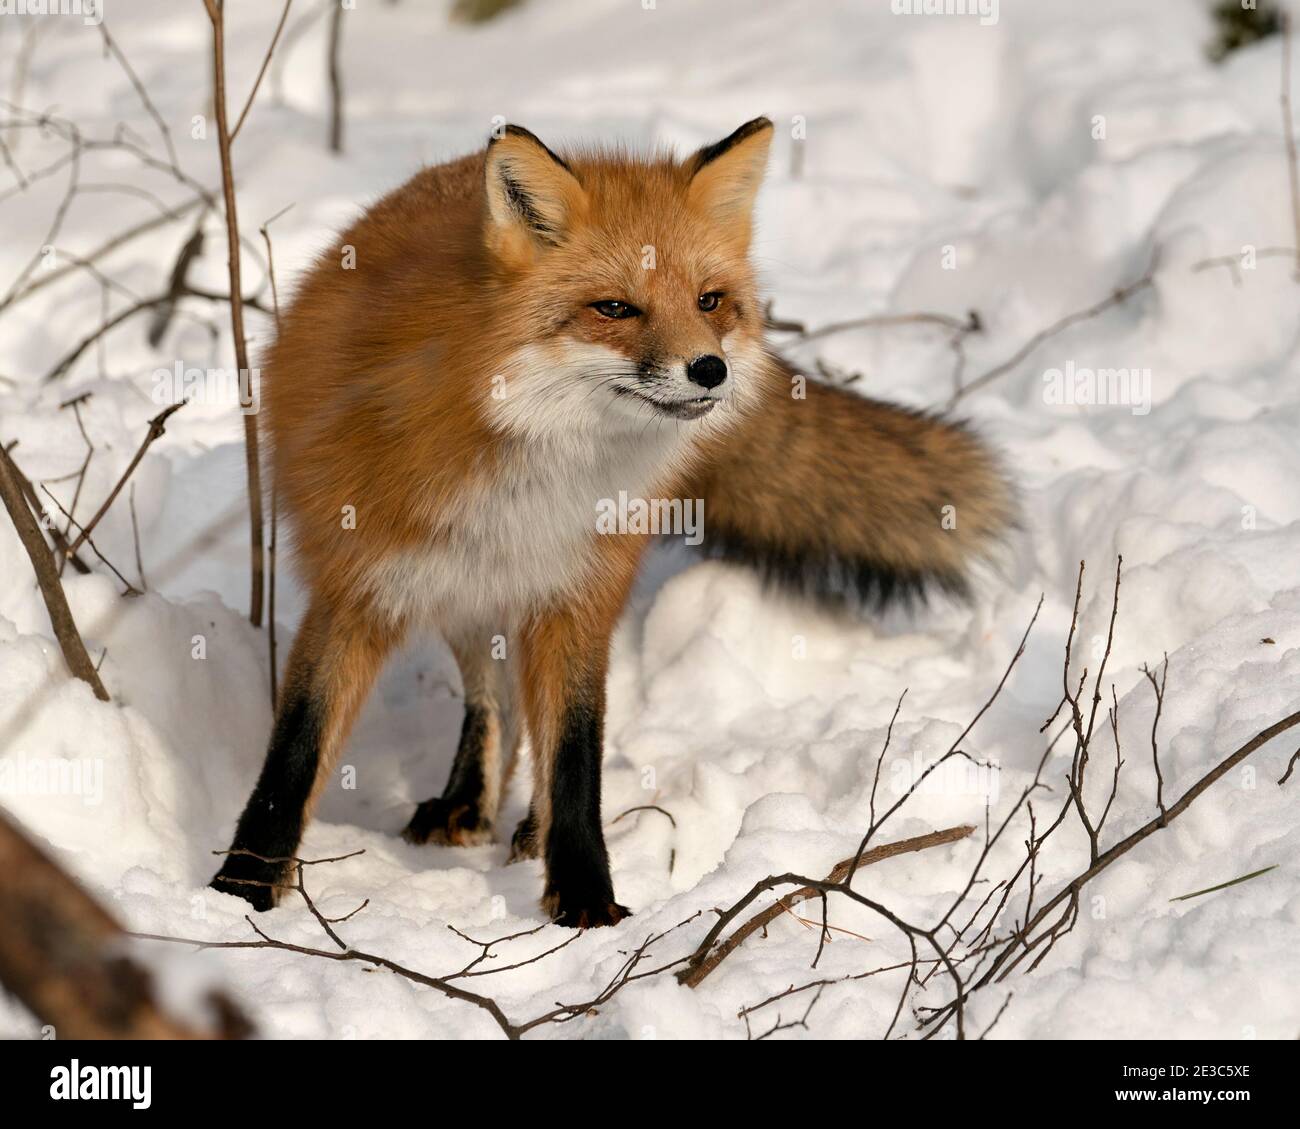 Volpe rossa guardando la macchina fotografica nella stagione invernale nel suo ambiente con neve e rami sfondo mostra la coda di volpe, pelliccia. Immagine FOX. Foto Stock